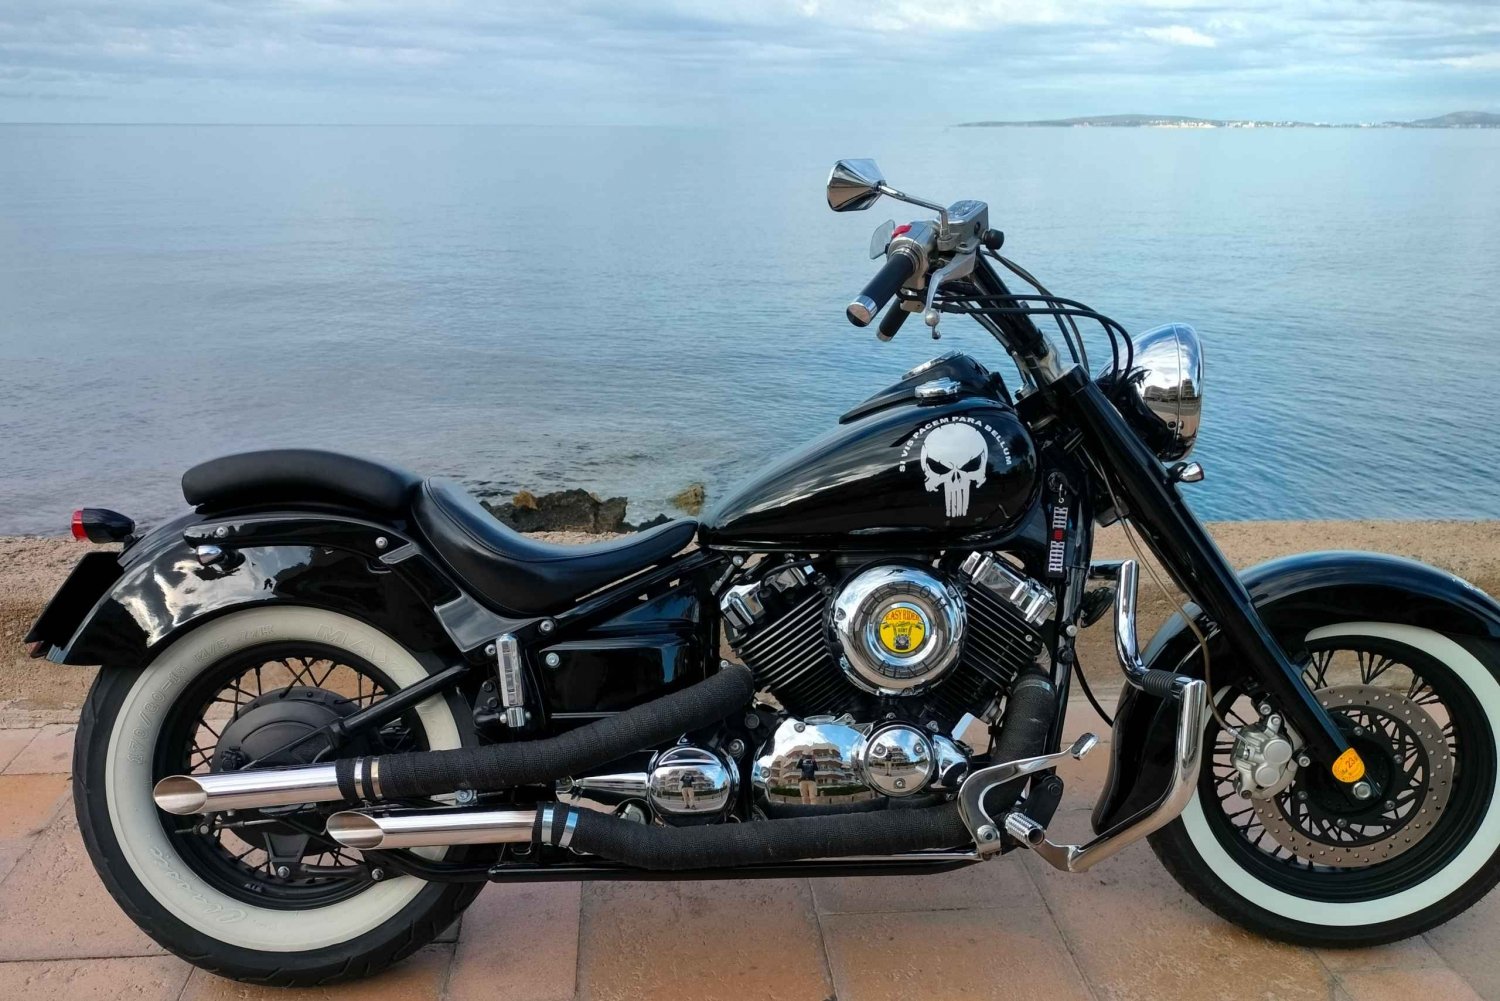 Vuokraa moottoripyörä 650cc / 1100cc Custom * Easy Rider Mallorca